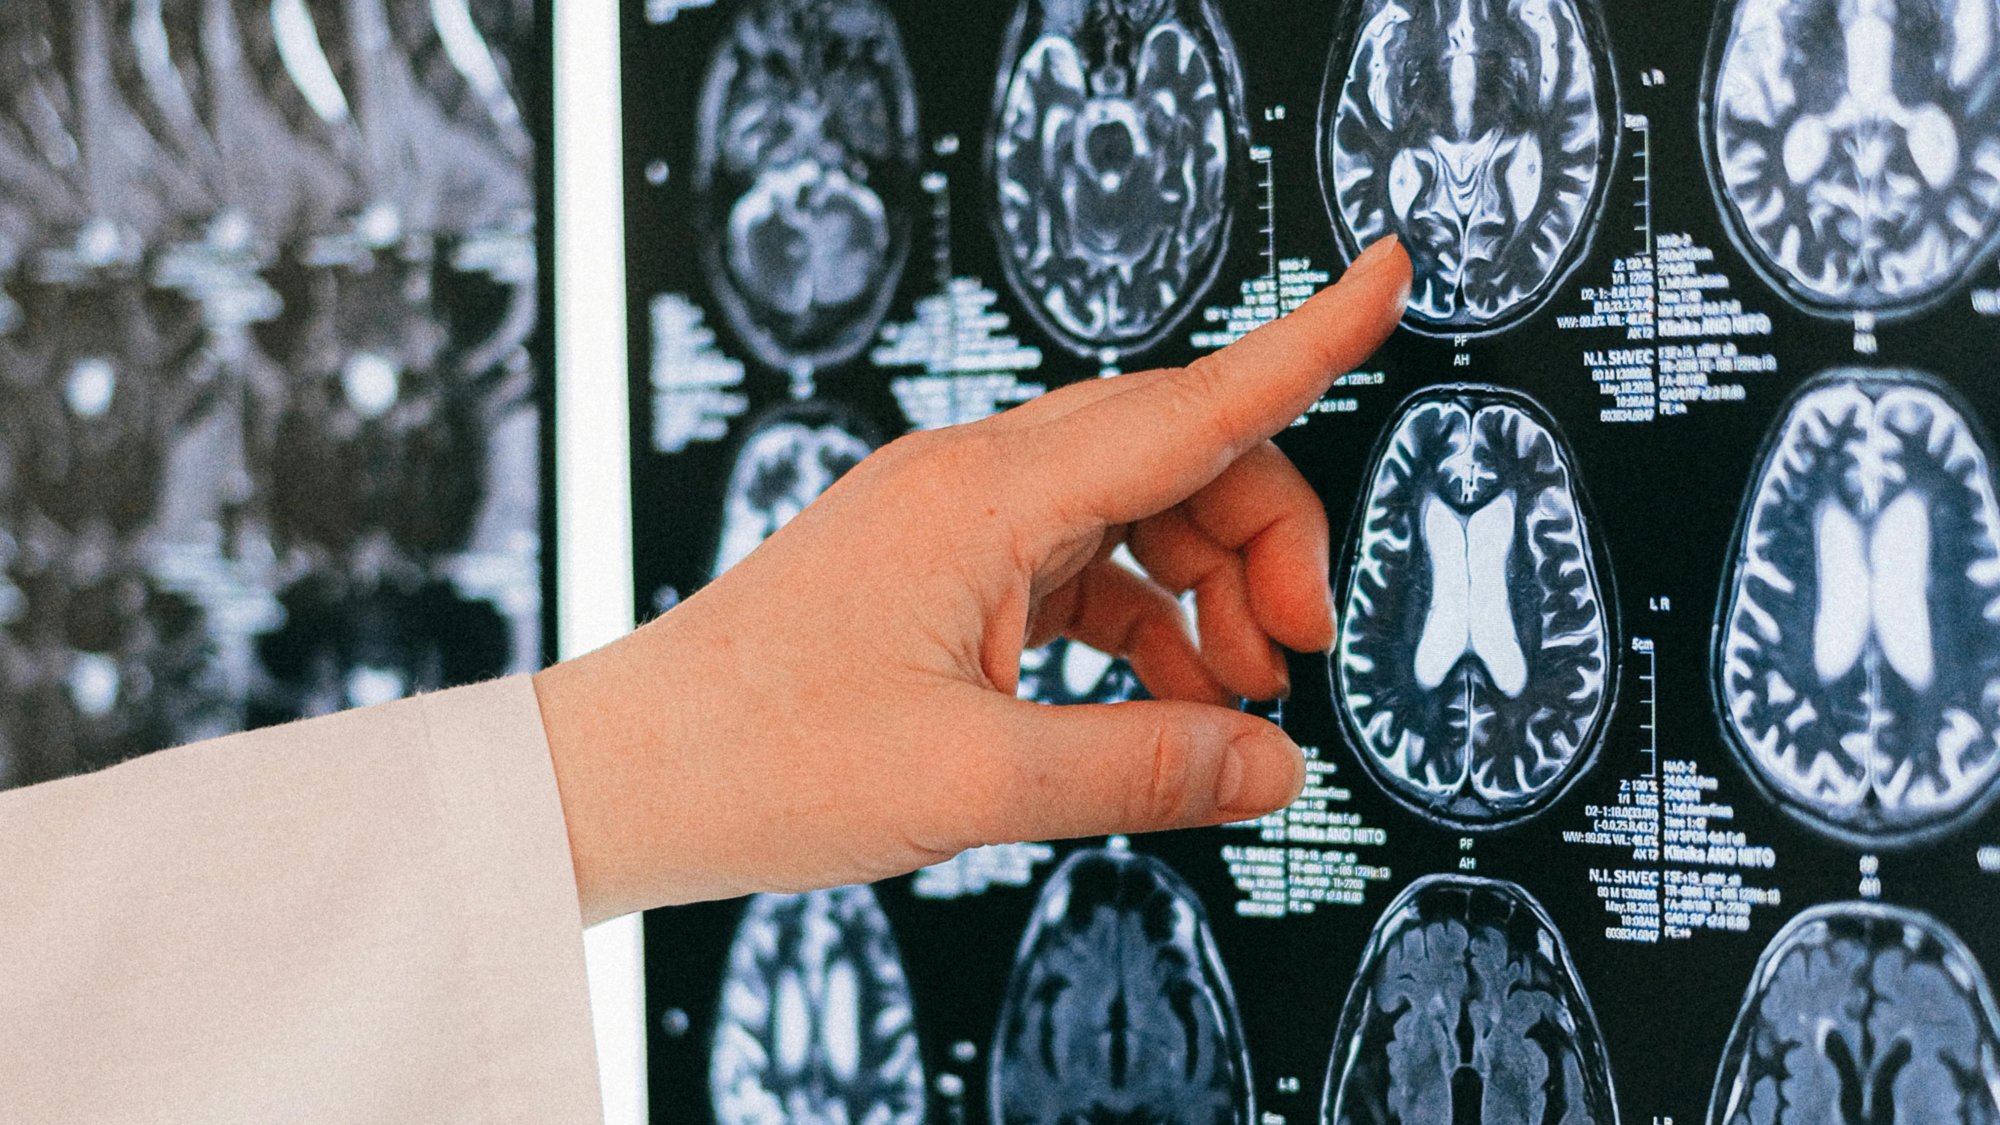 Καναδάς: Ανησυχία για μυστηριώδη ασθένεια του εγκεφάλου - Επιστήμονες καταγγέλλουν απαγόρευση μελέτης